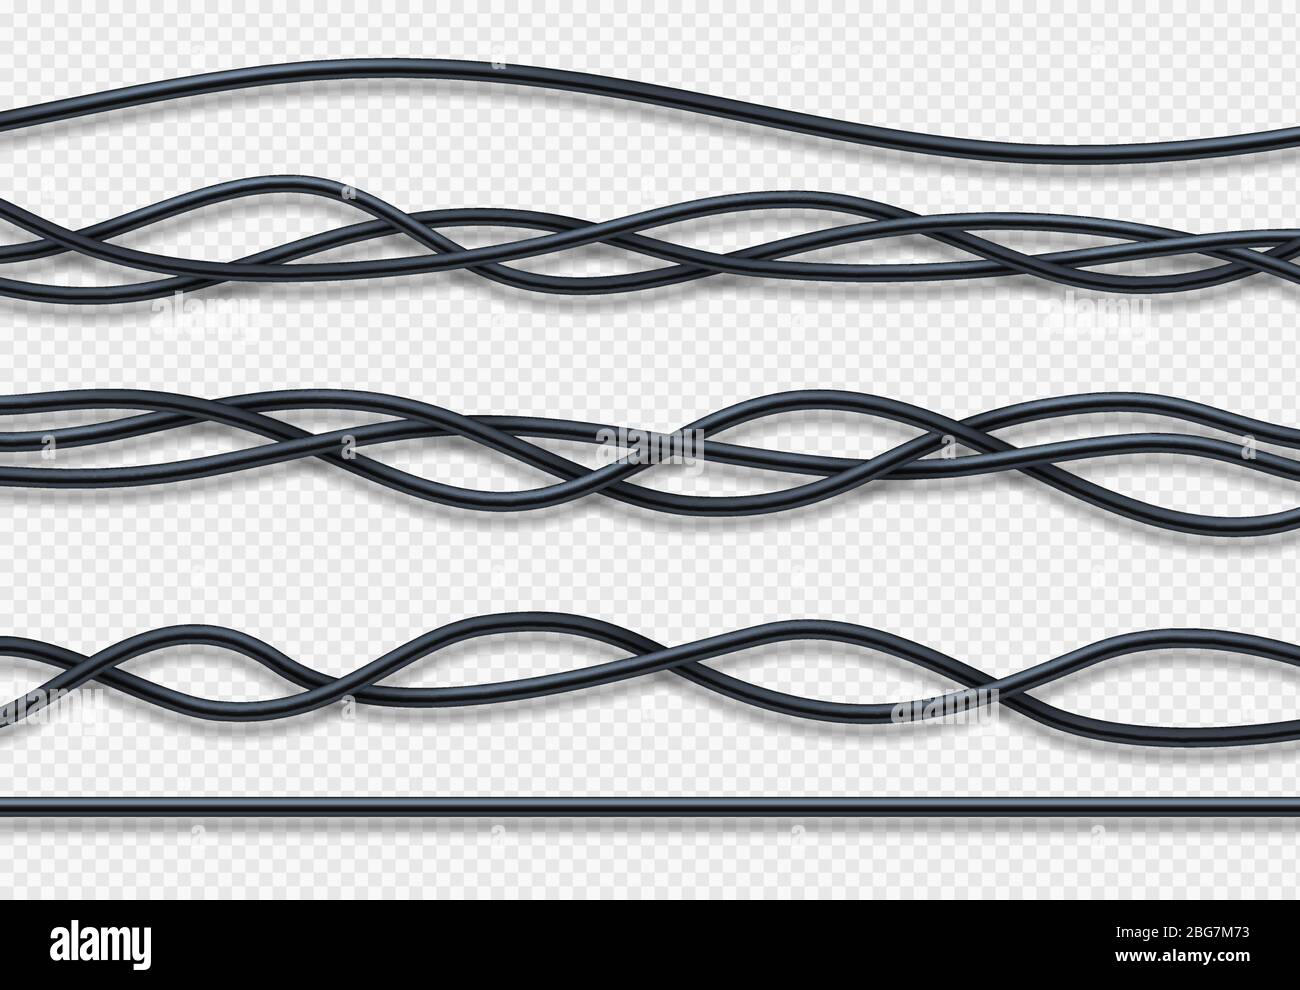 Realistische elektrische Drähte, Anschluss Industriekabel Vektor-Set. Abbildung: Kabelverbindung, Stromversorgung des Kabels Stock Vektor